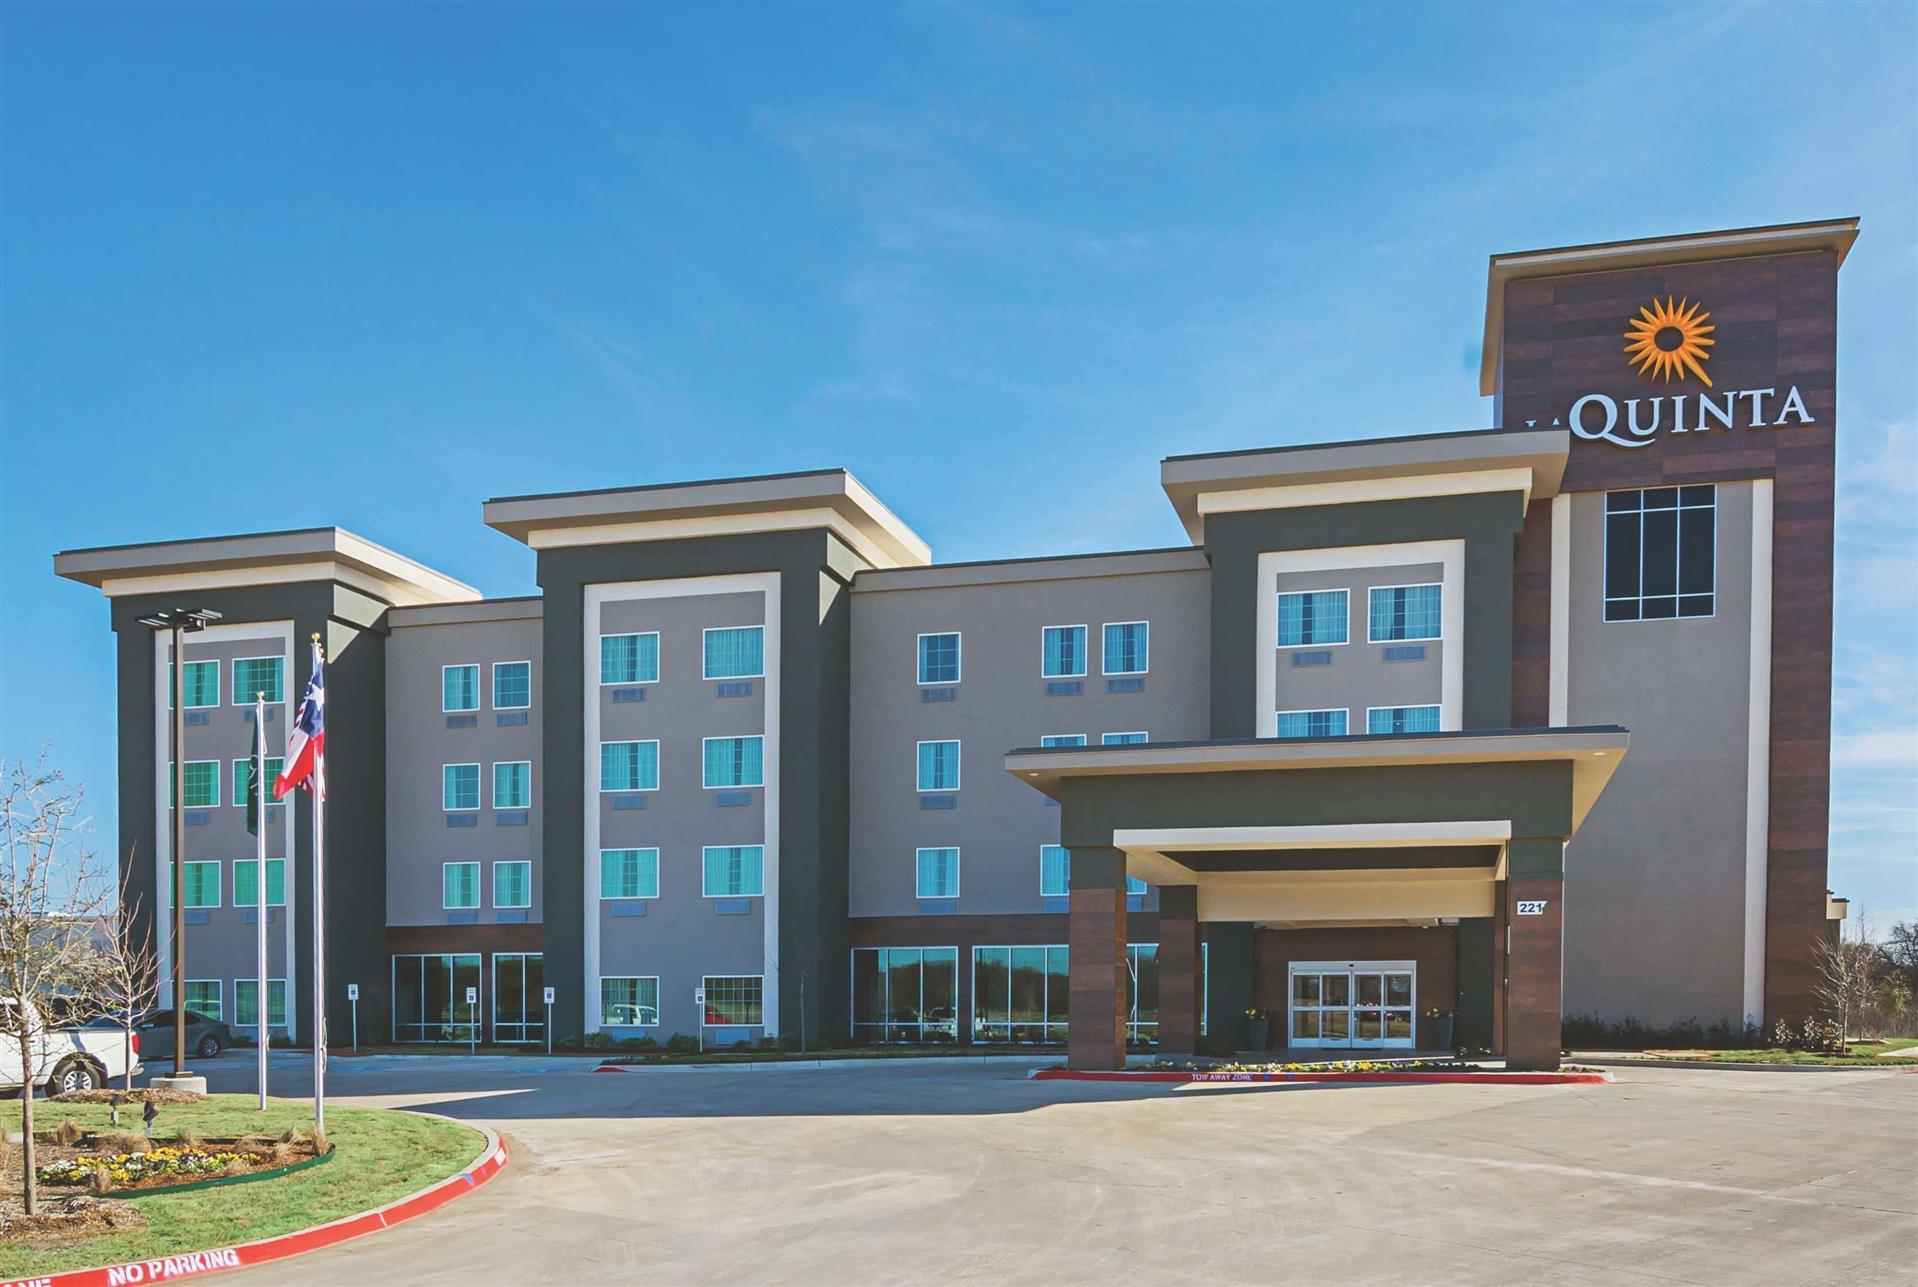 La Quinta Inn & Suites by Wyndham Dallas - Wylie in Wylie, TX